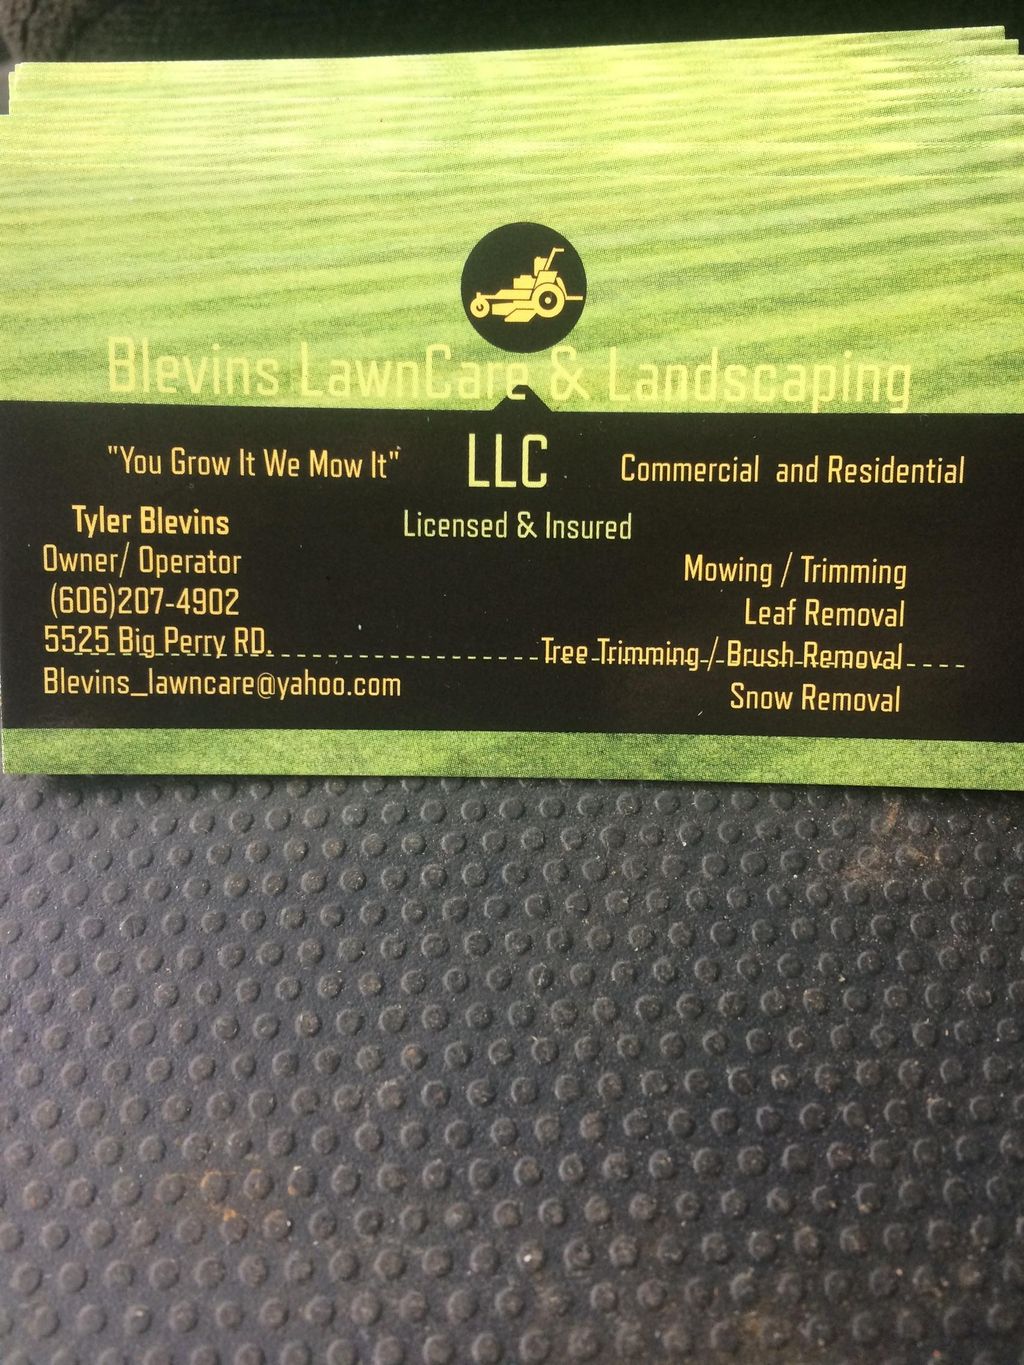 Blevins lawncare & landscaping LLC.